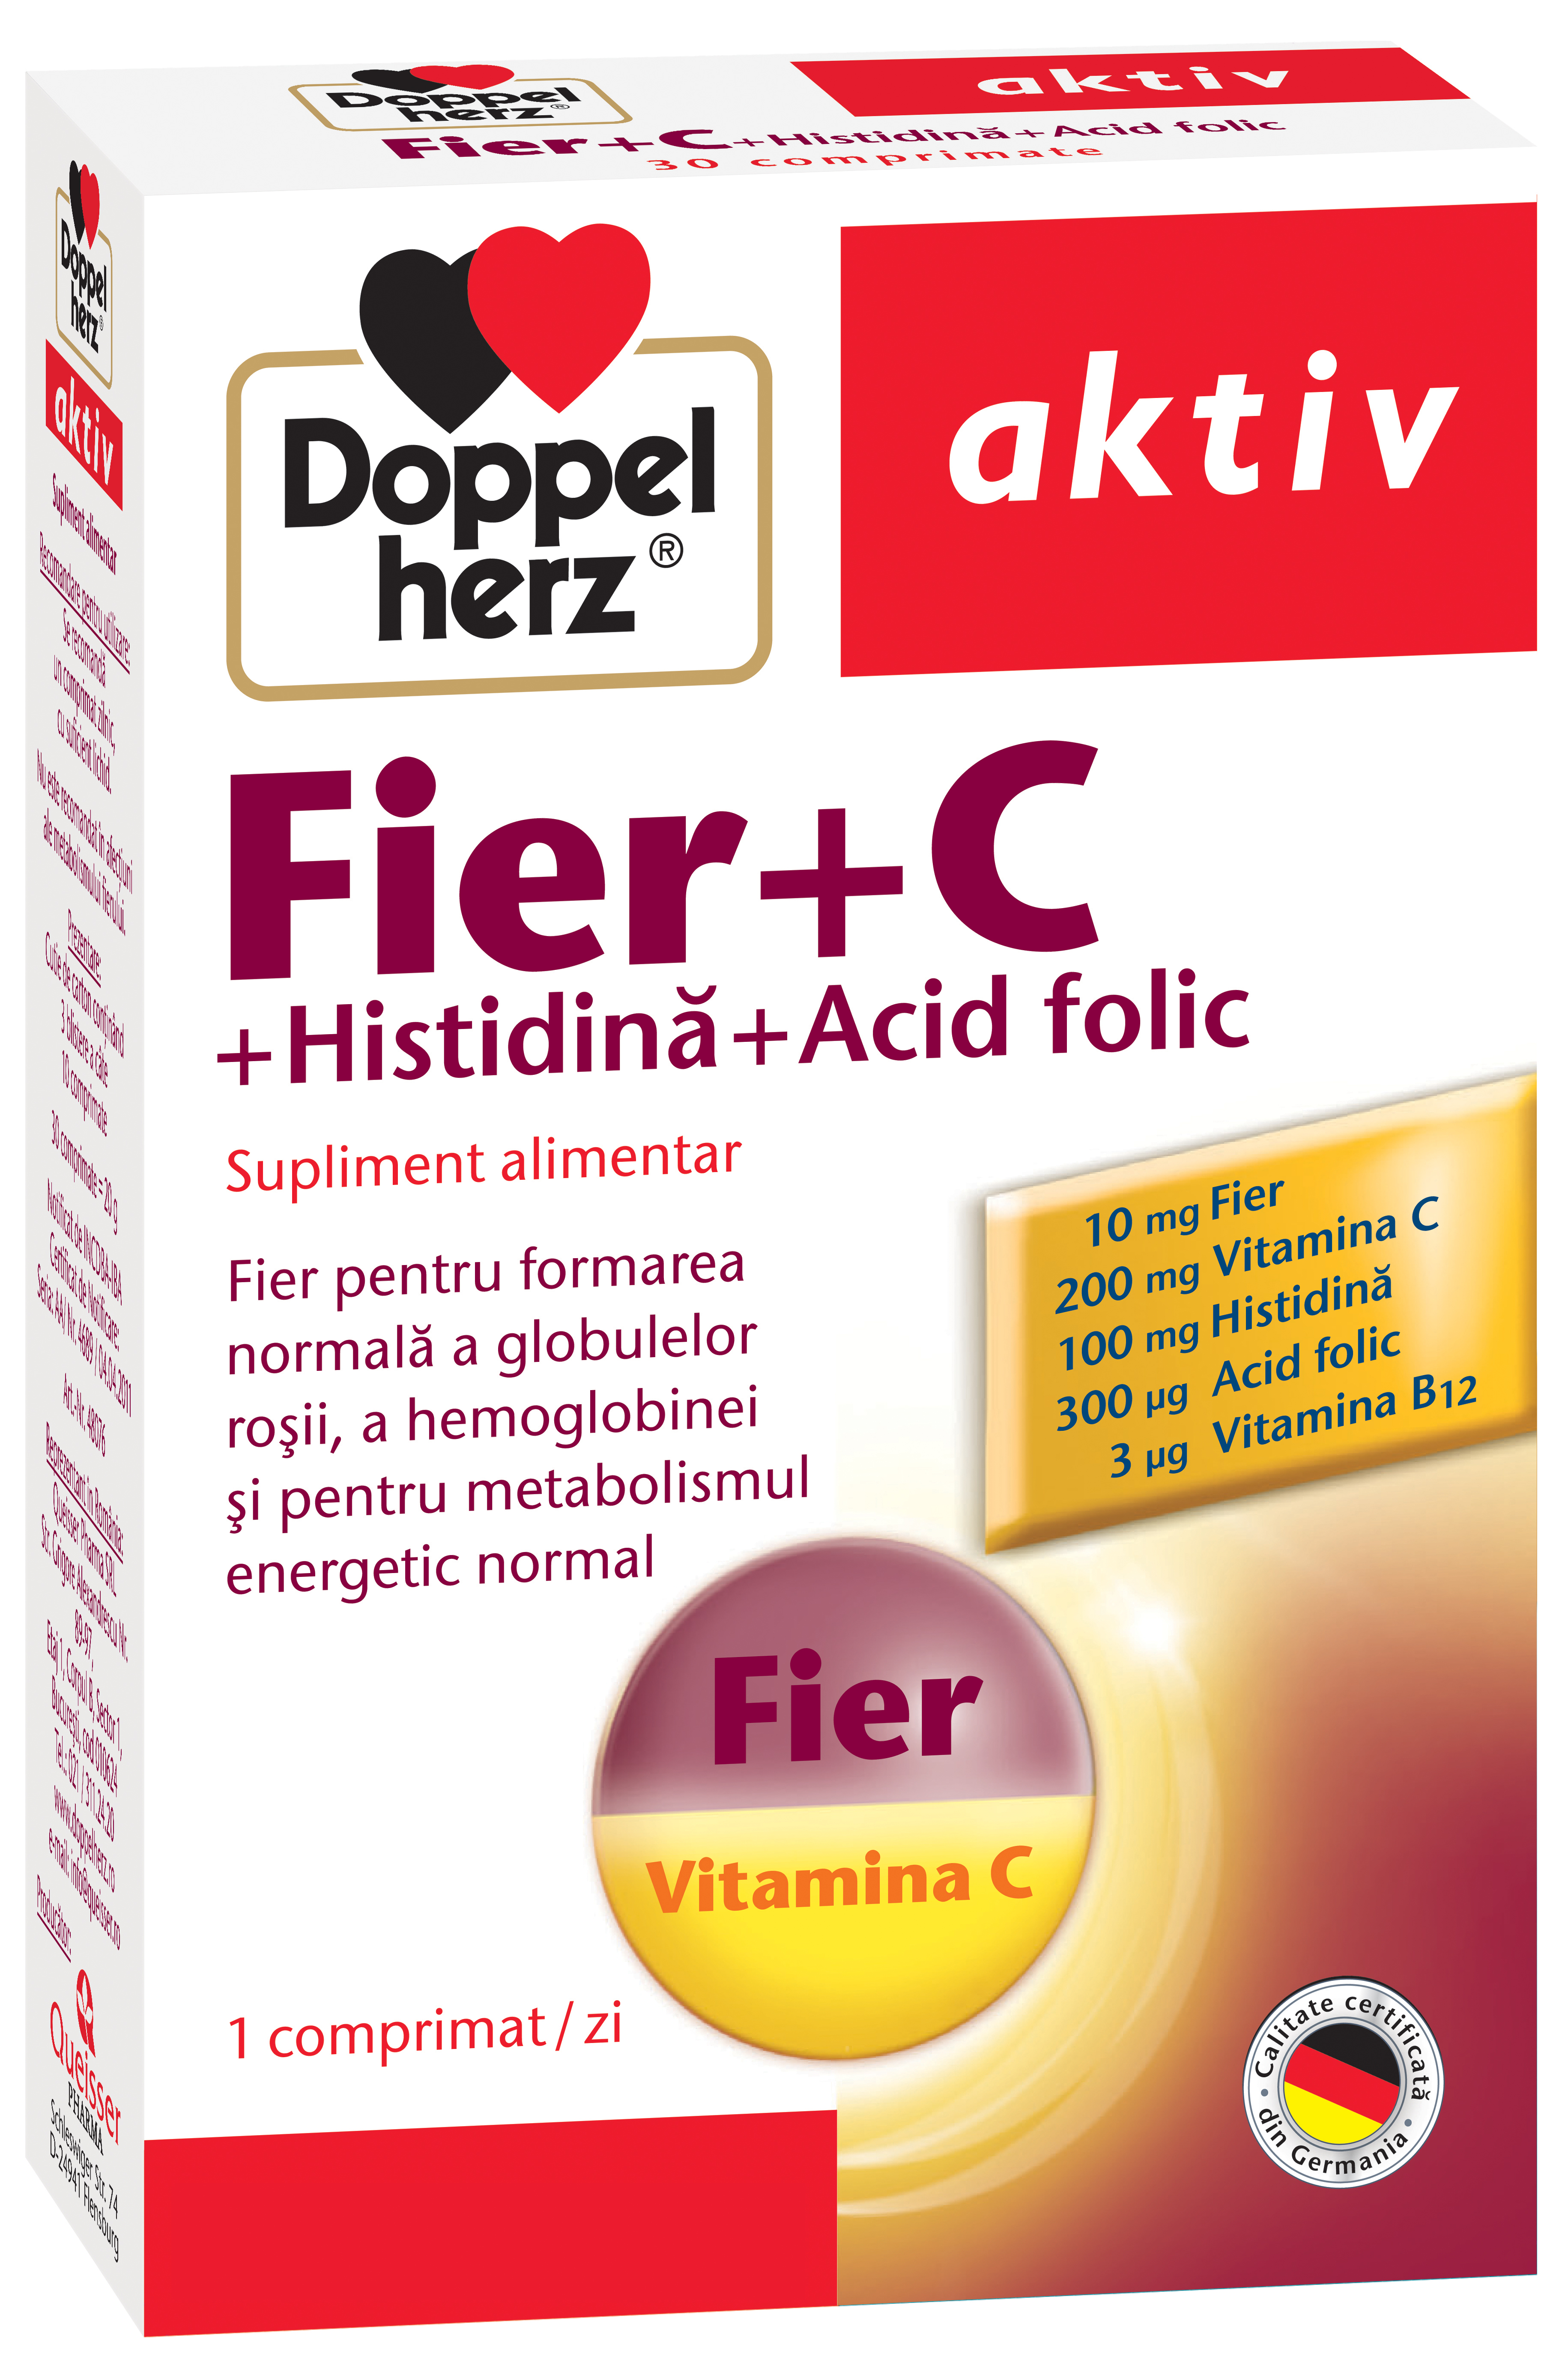 Adulti - Doppelherz Aktiv Fier + C + Histidină + Acid folic, 30 comprimate, sinapis.ro